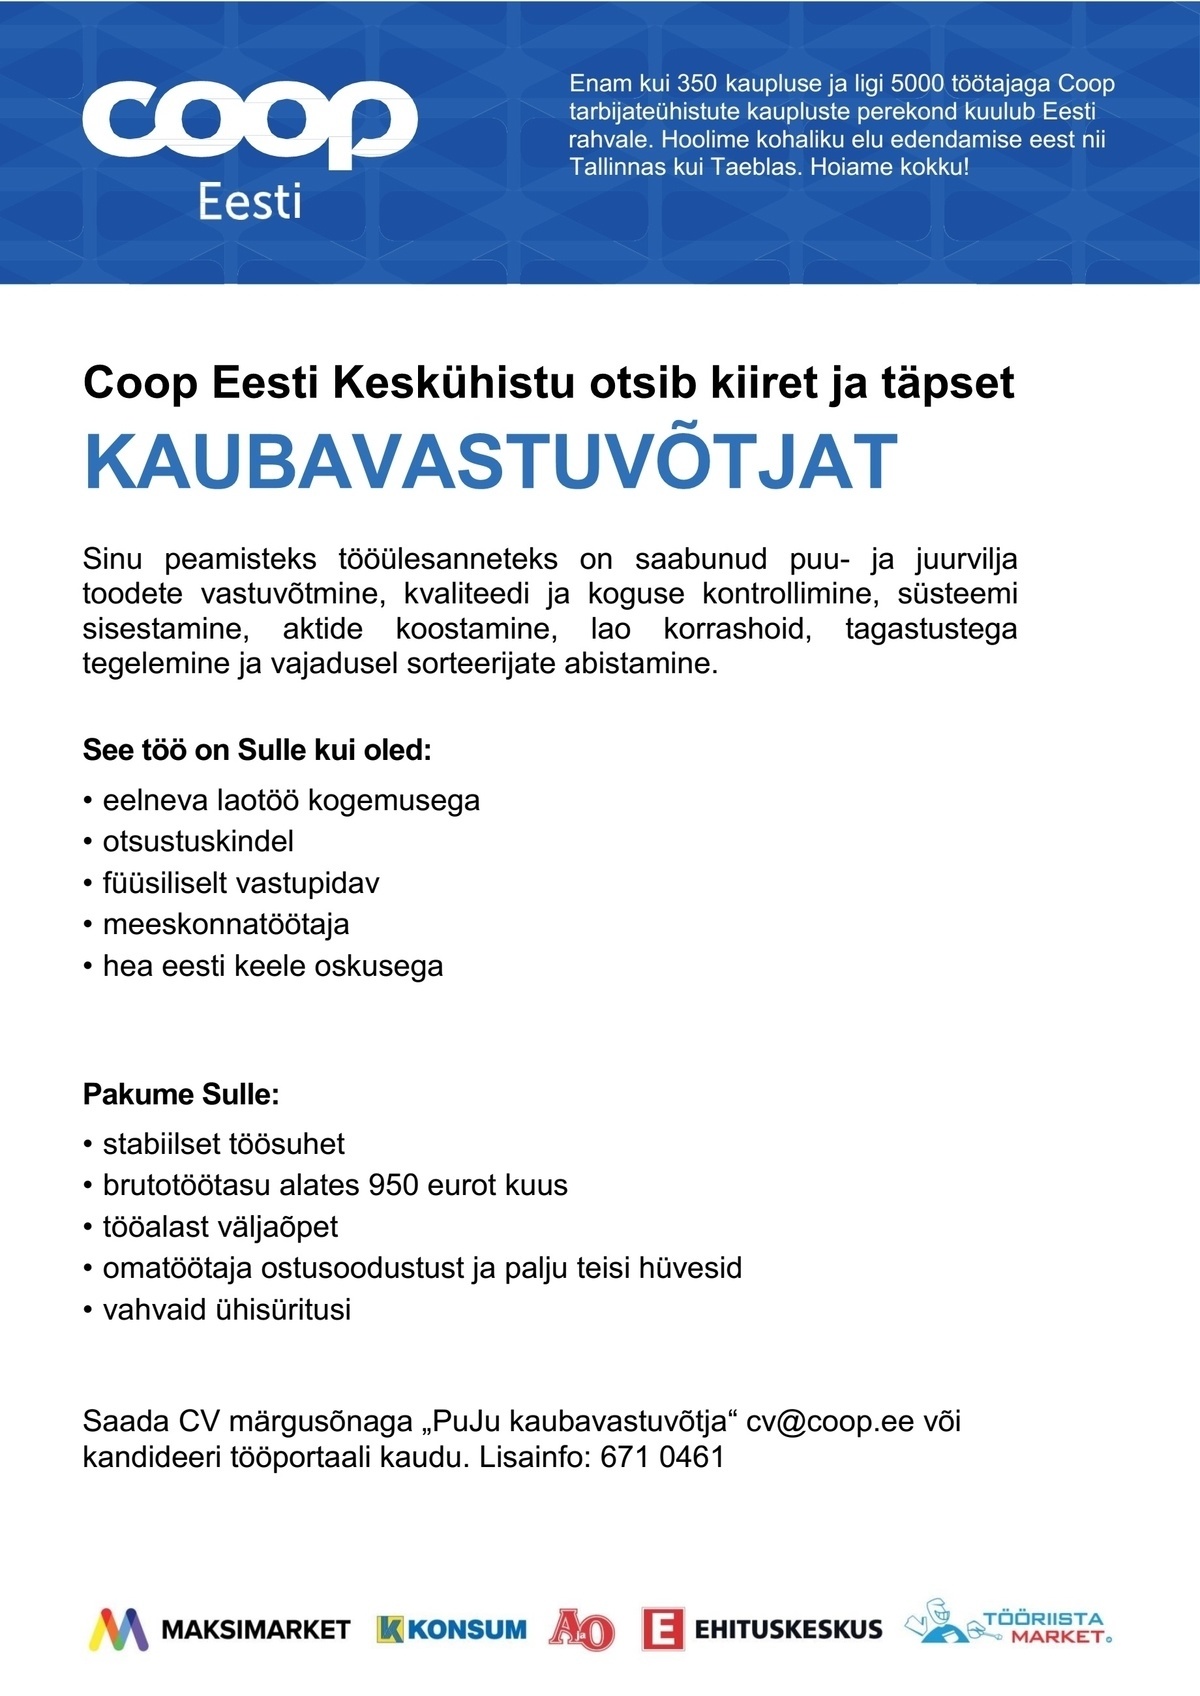 Coop Eesti Keskühistu Kaubavastuvõtja (jaheladu)